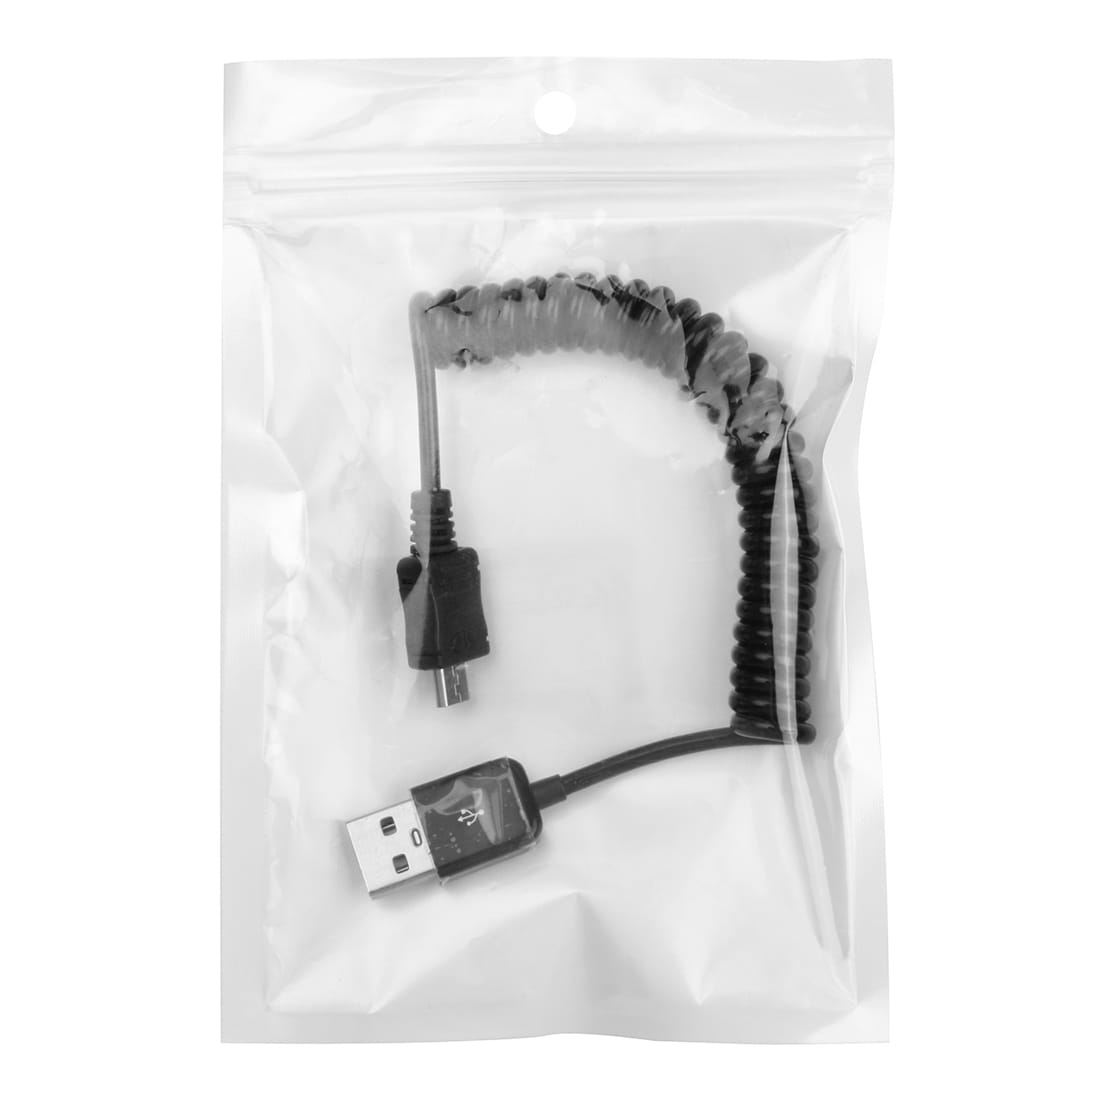 Trasselfri uppdragbar Micro-usb kabel - 24-90cm lång